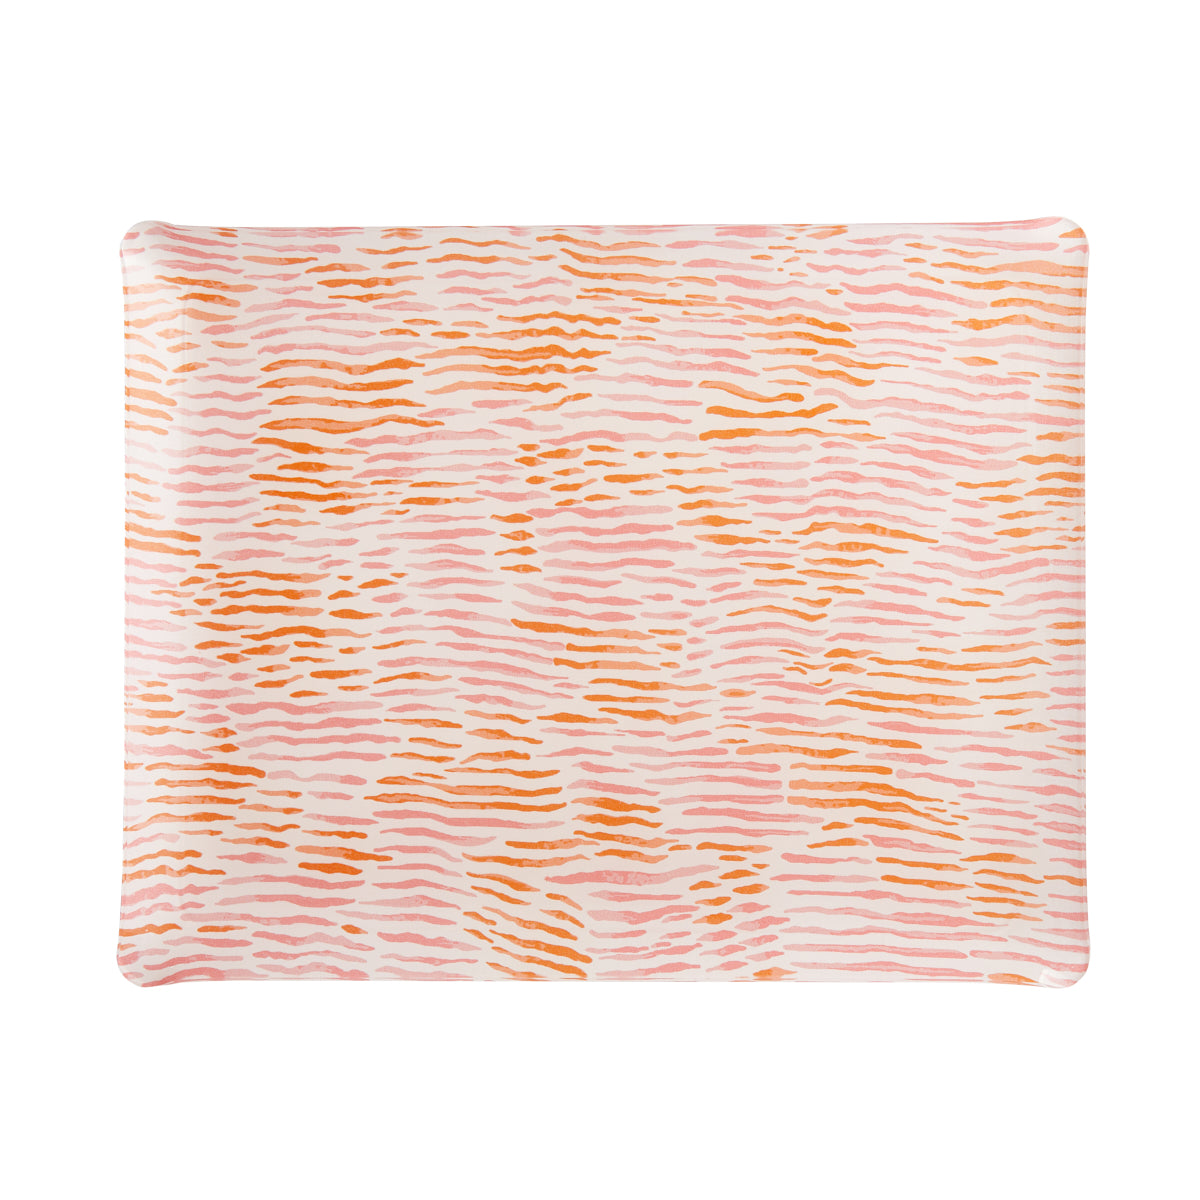 Fabric Tray Large 46X36 - Arles - Pink/Orange